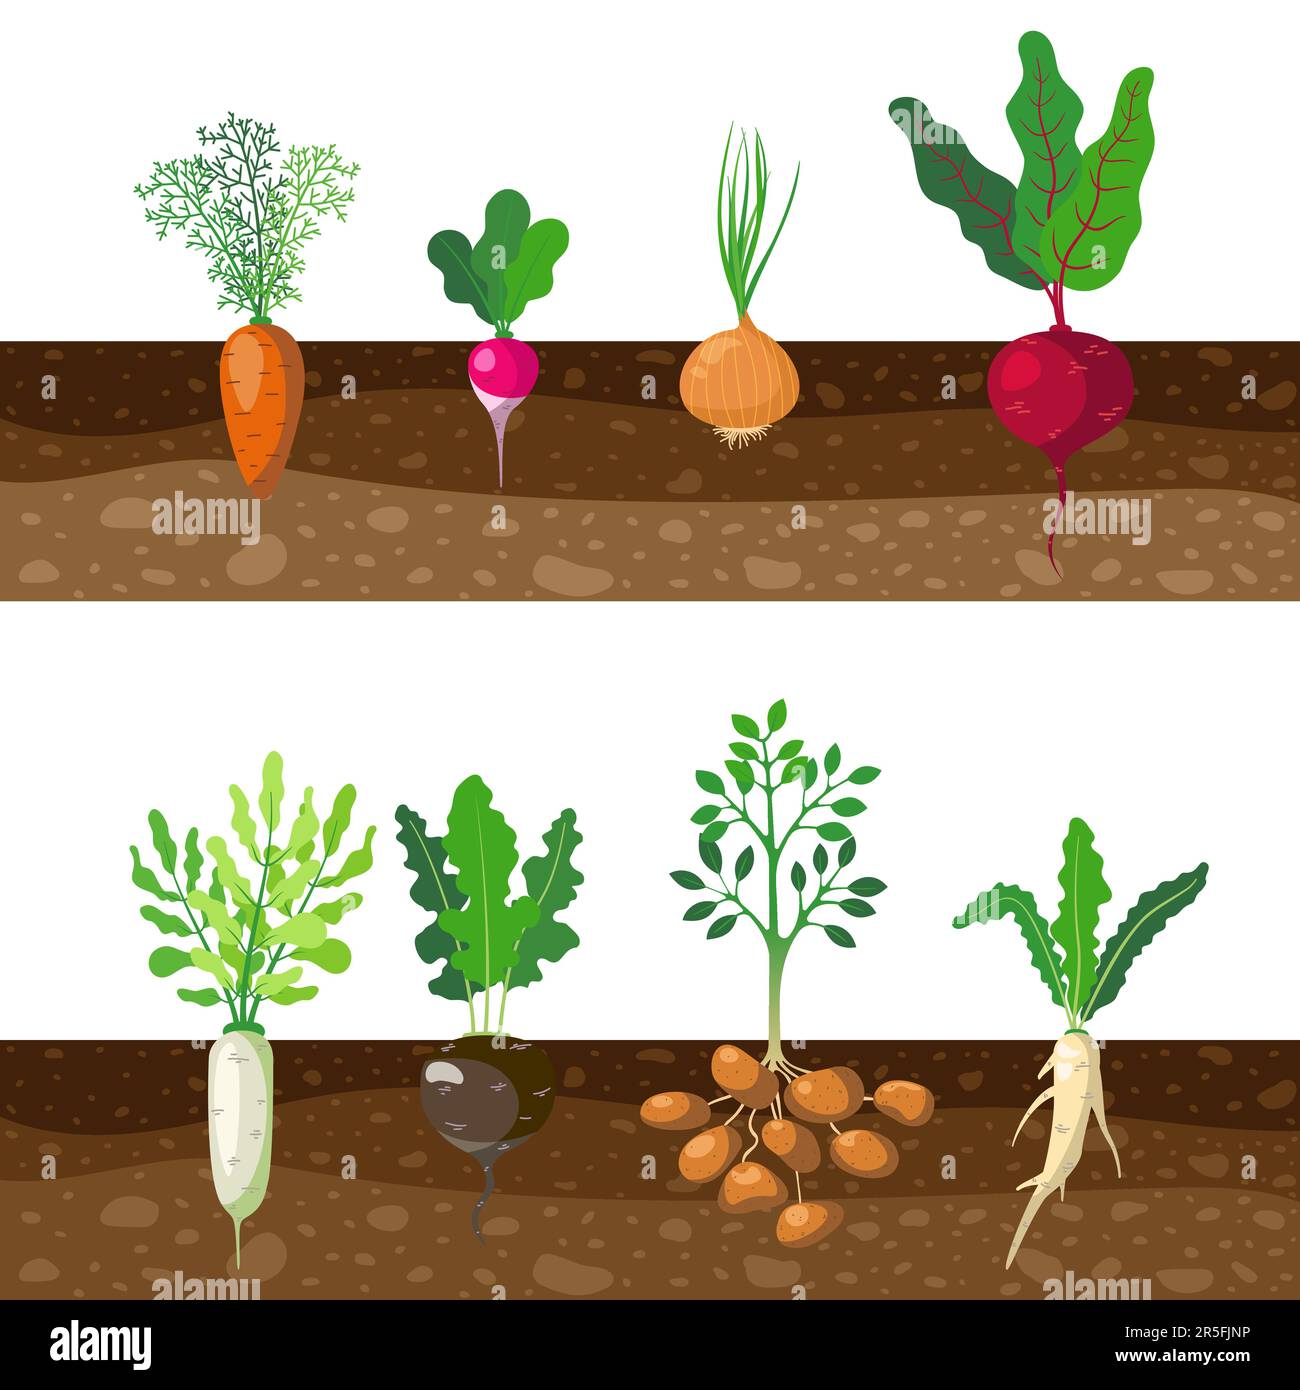 root vegetables growing